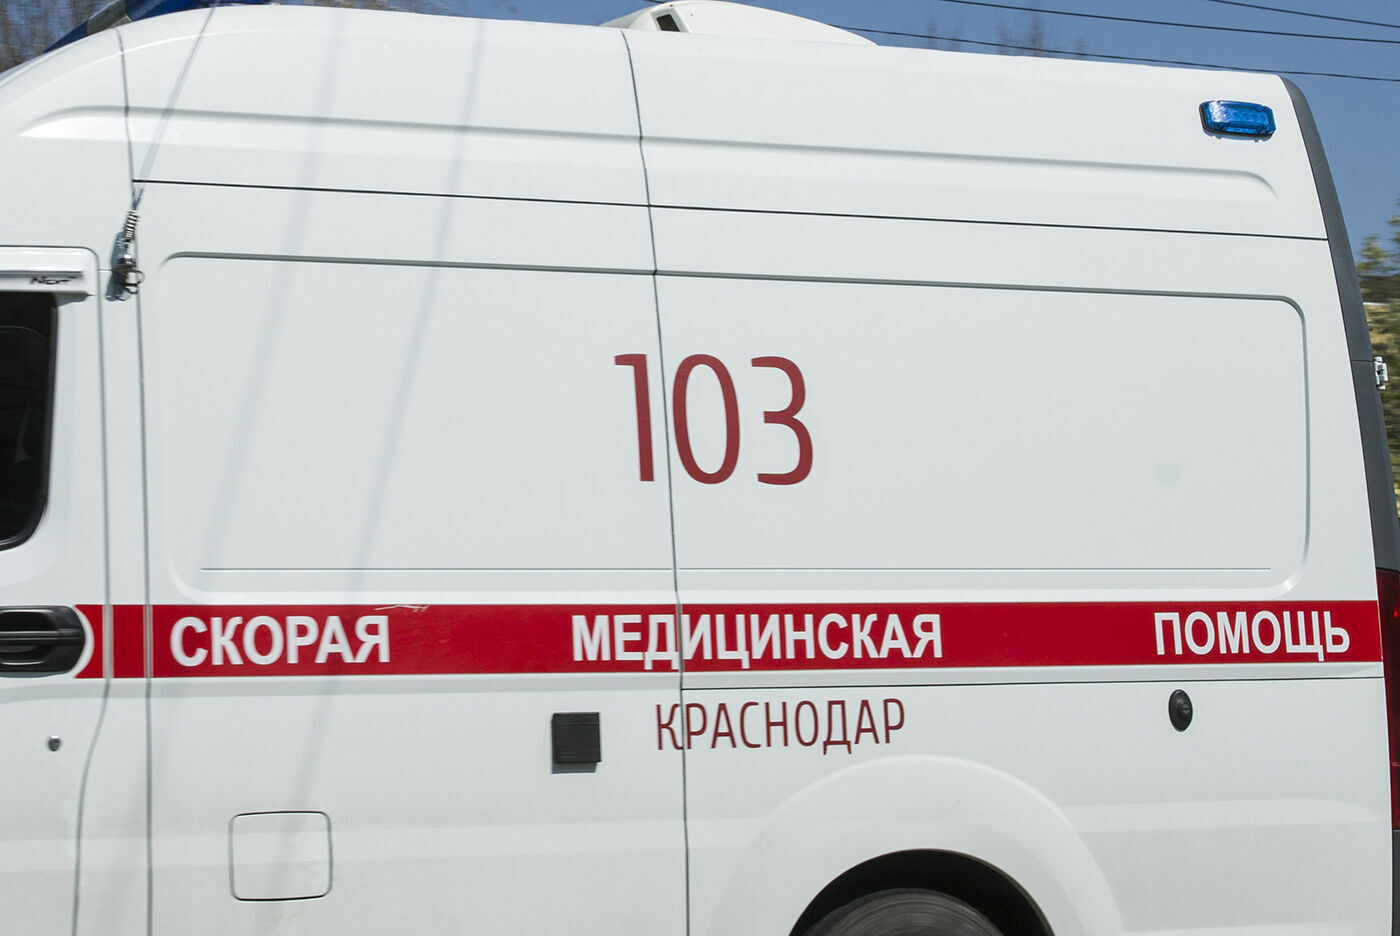 Пациенты со СМА в России могут получить лекарства до конца года